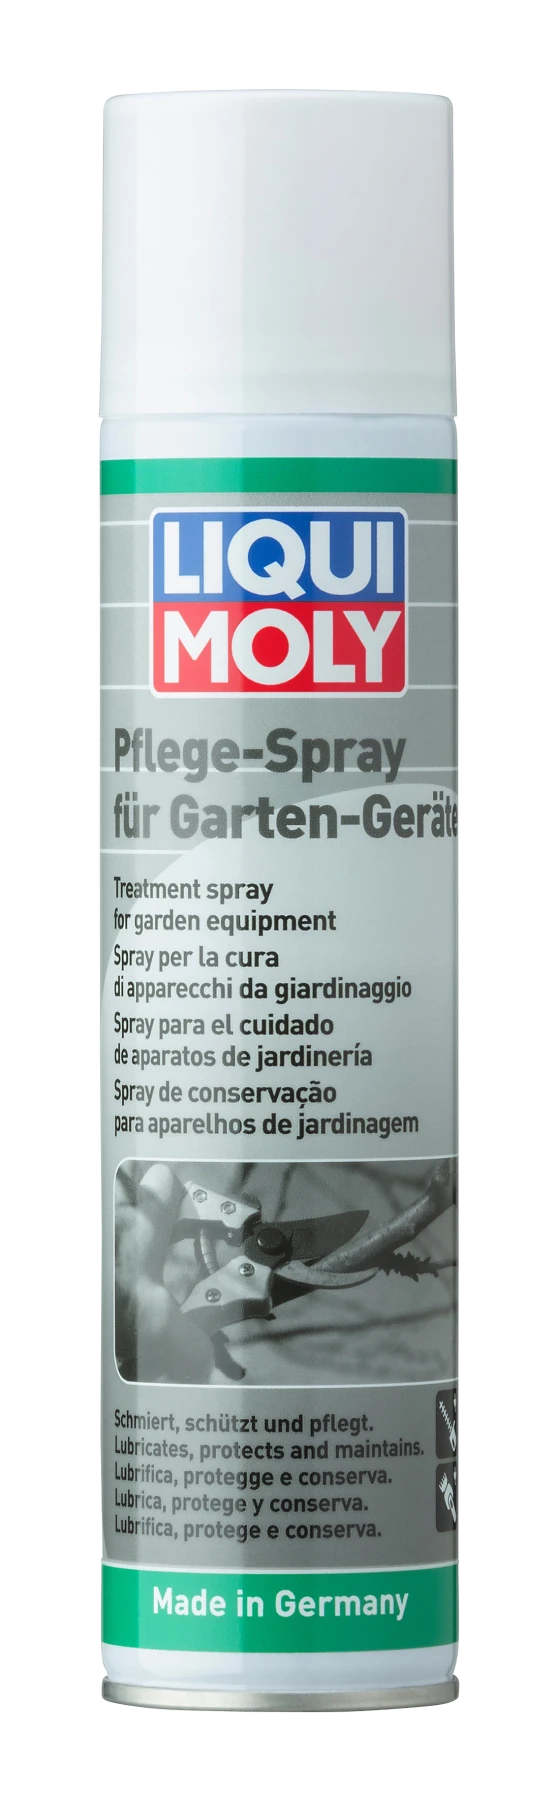 1615 LIQUI MOLY GmbH 1615 Sprej na údržbu zahradní techniky LIQUI MOLY